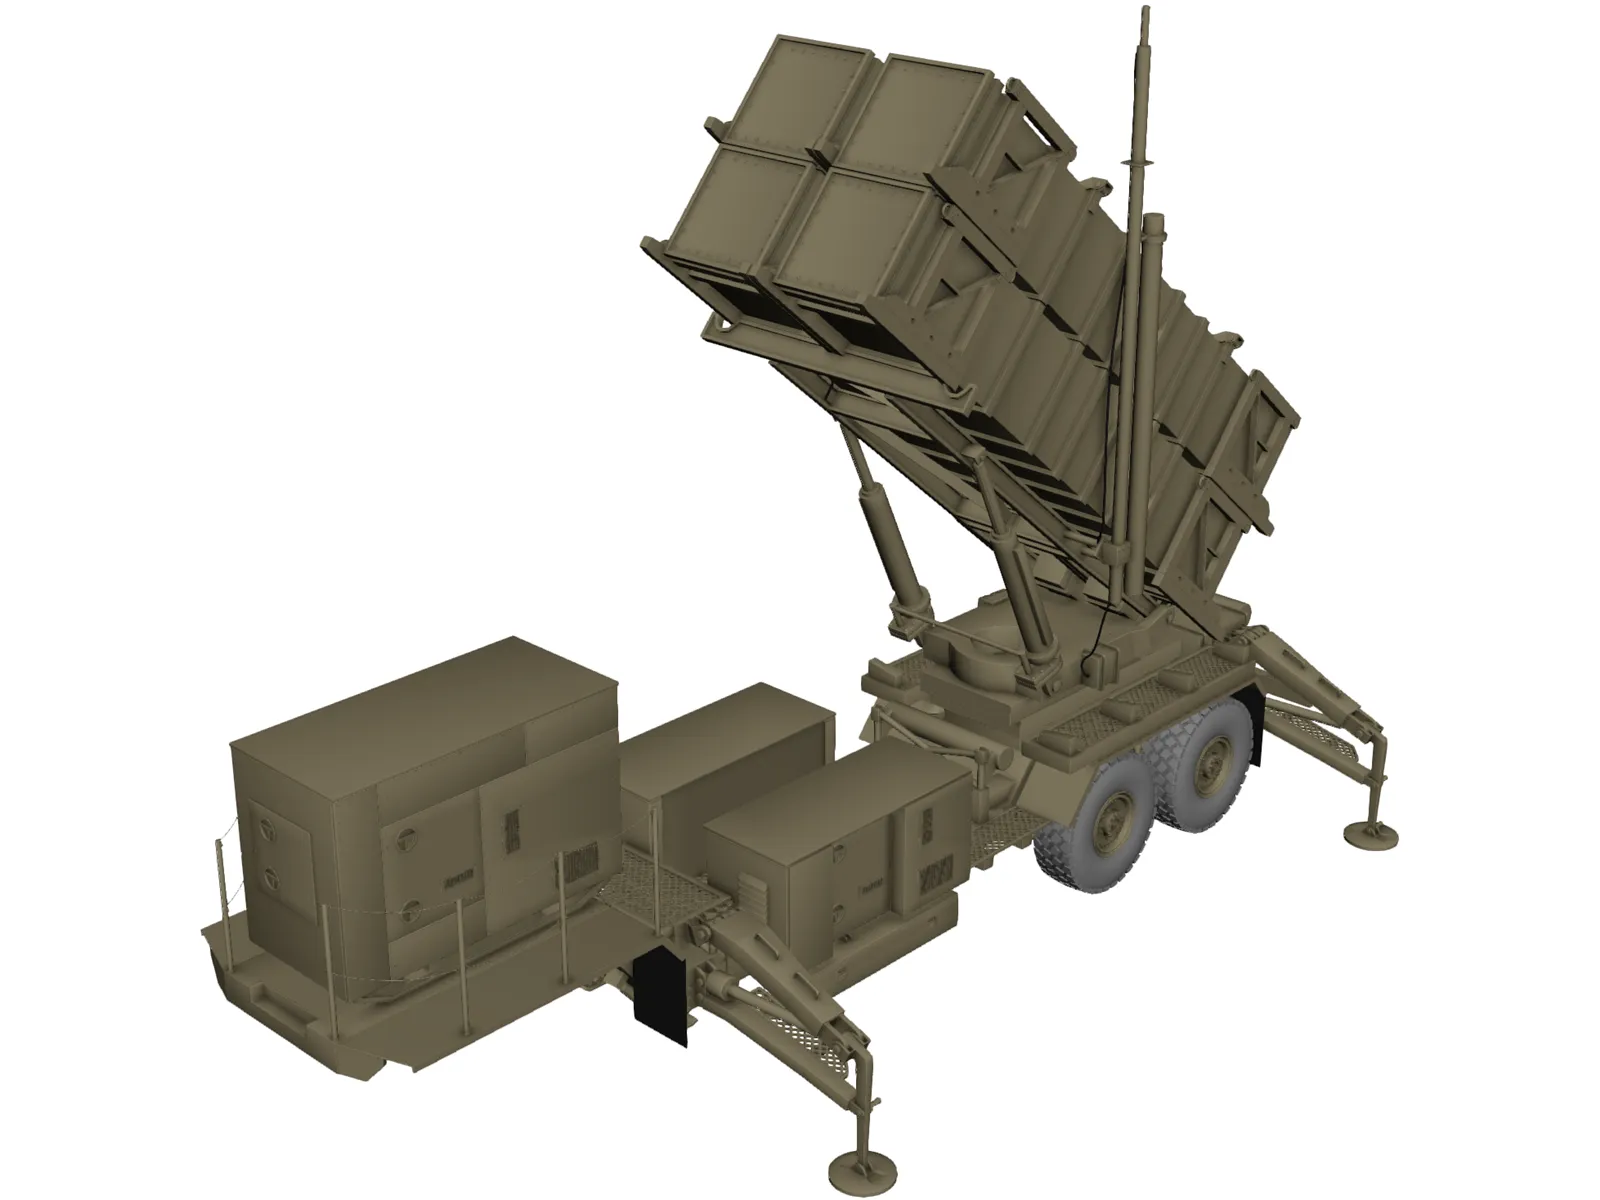 Patriot MIM-104 3D Model